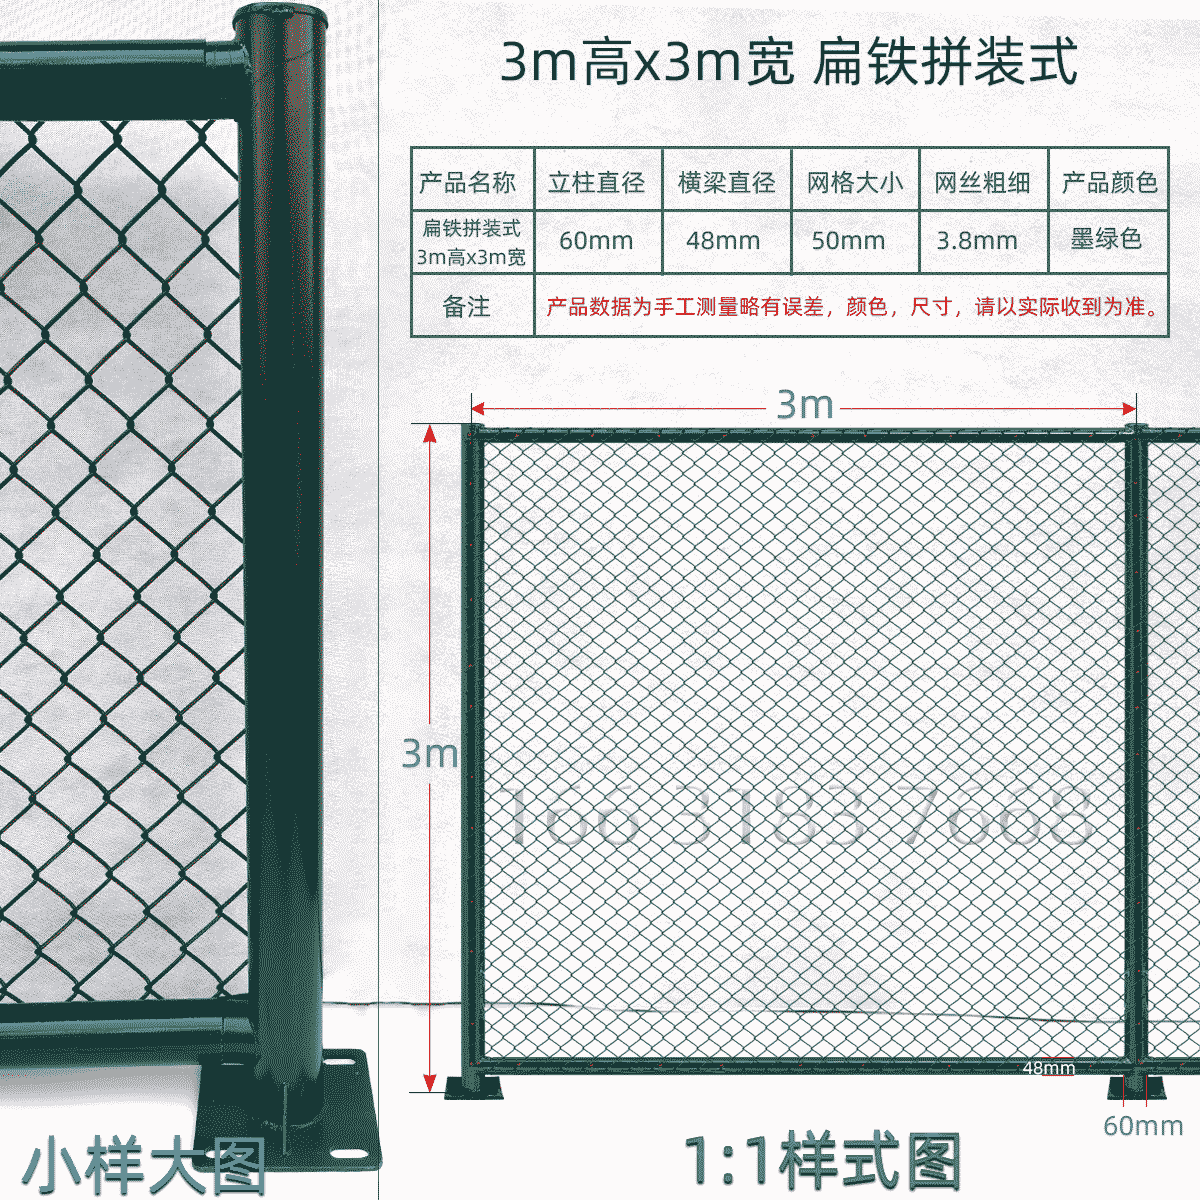 3m高x3m宽扁铁组装式球场围栏网